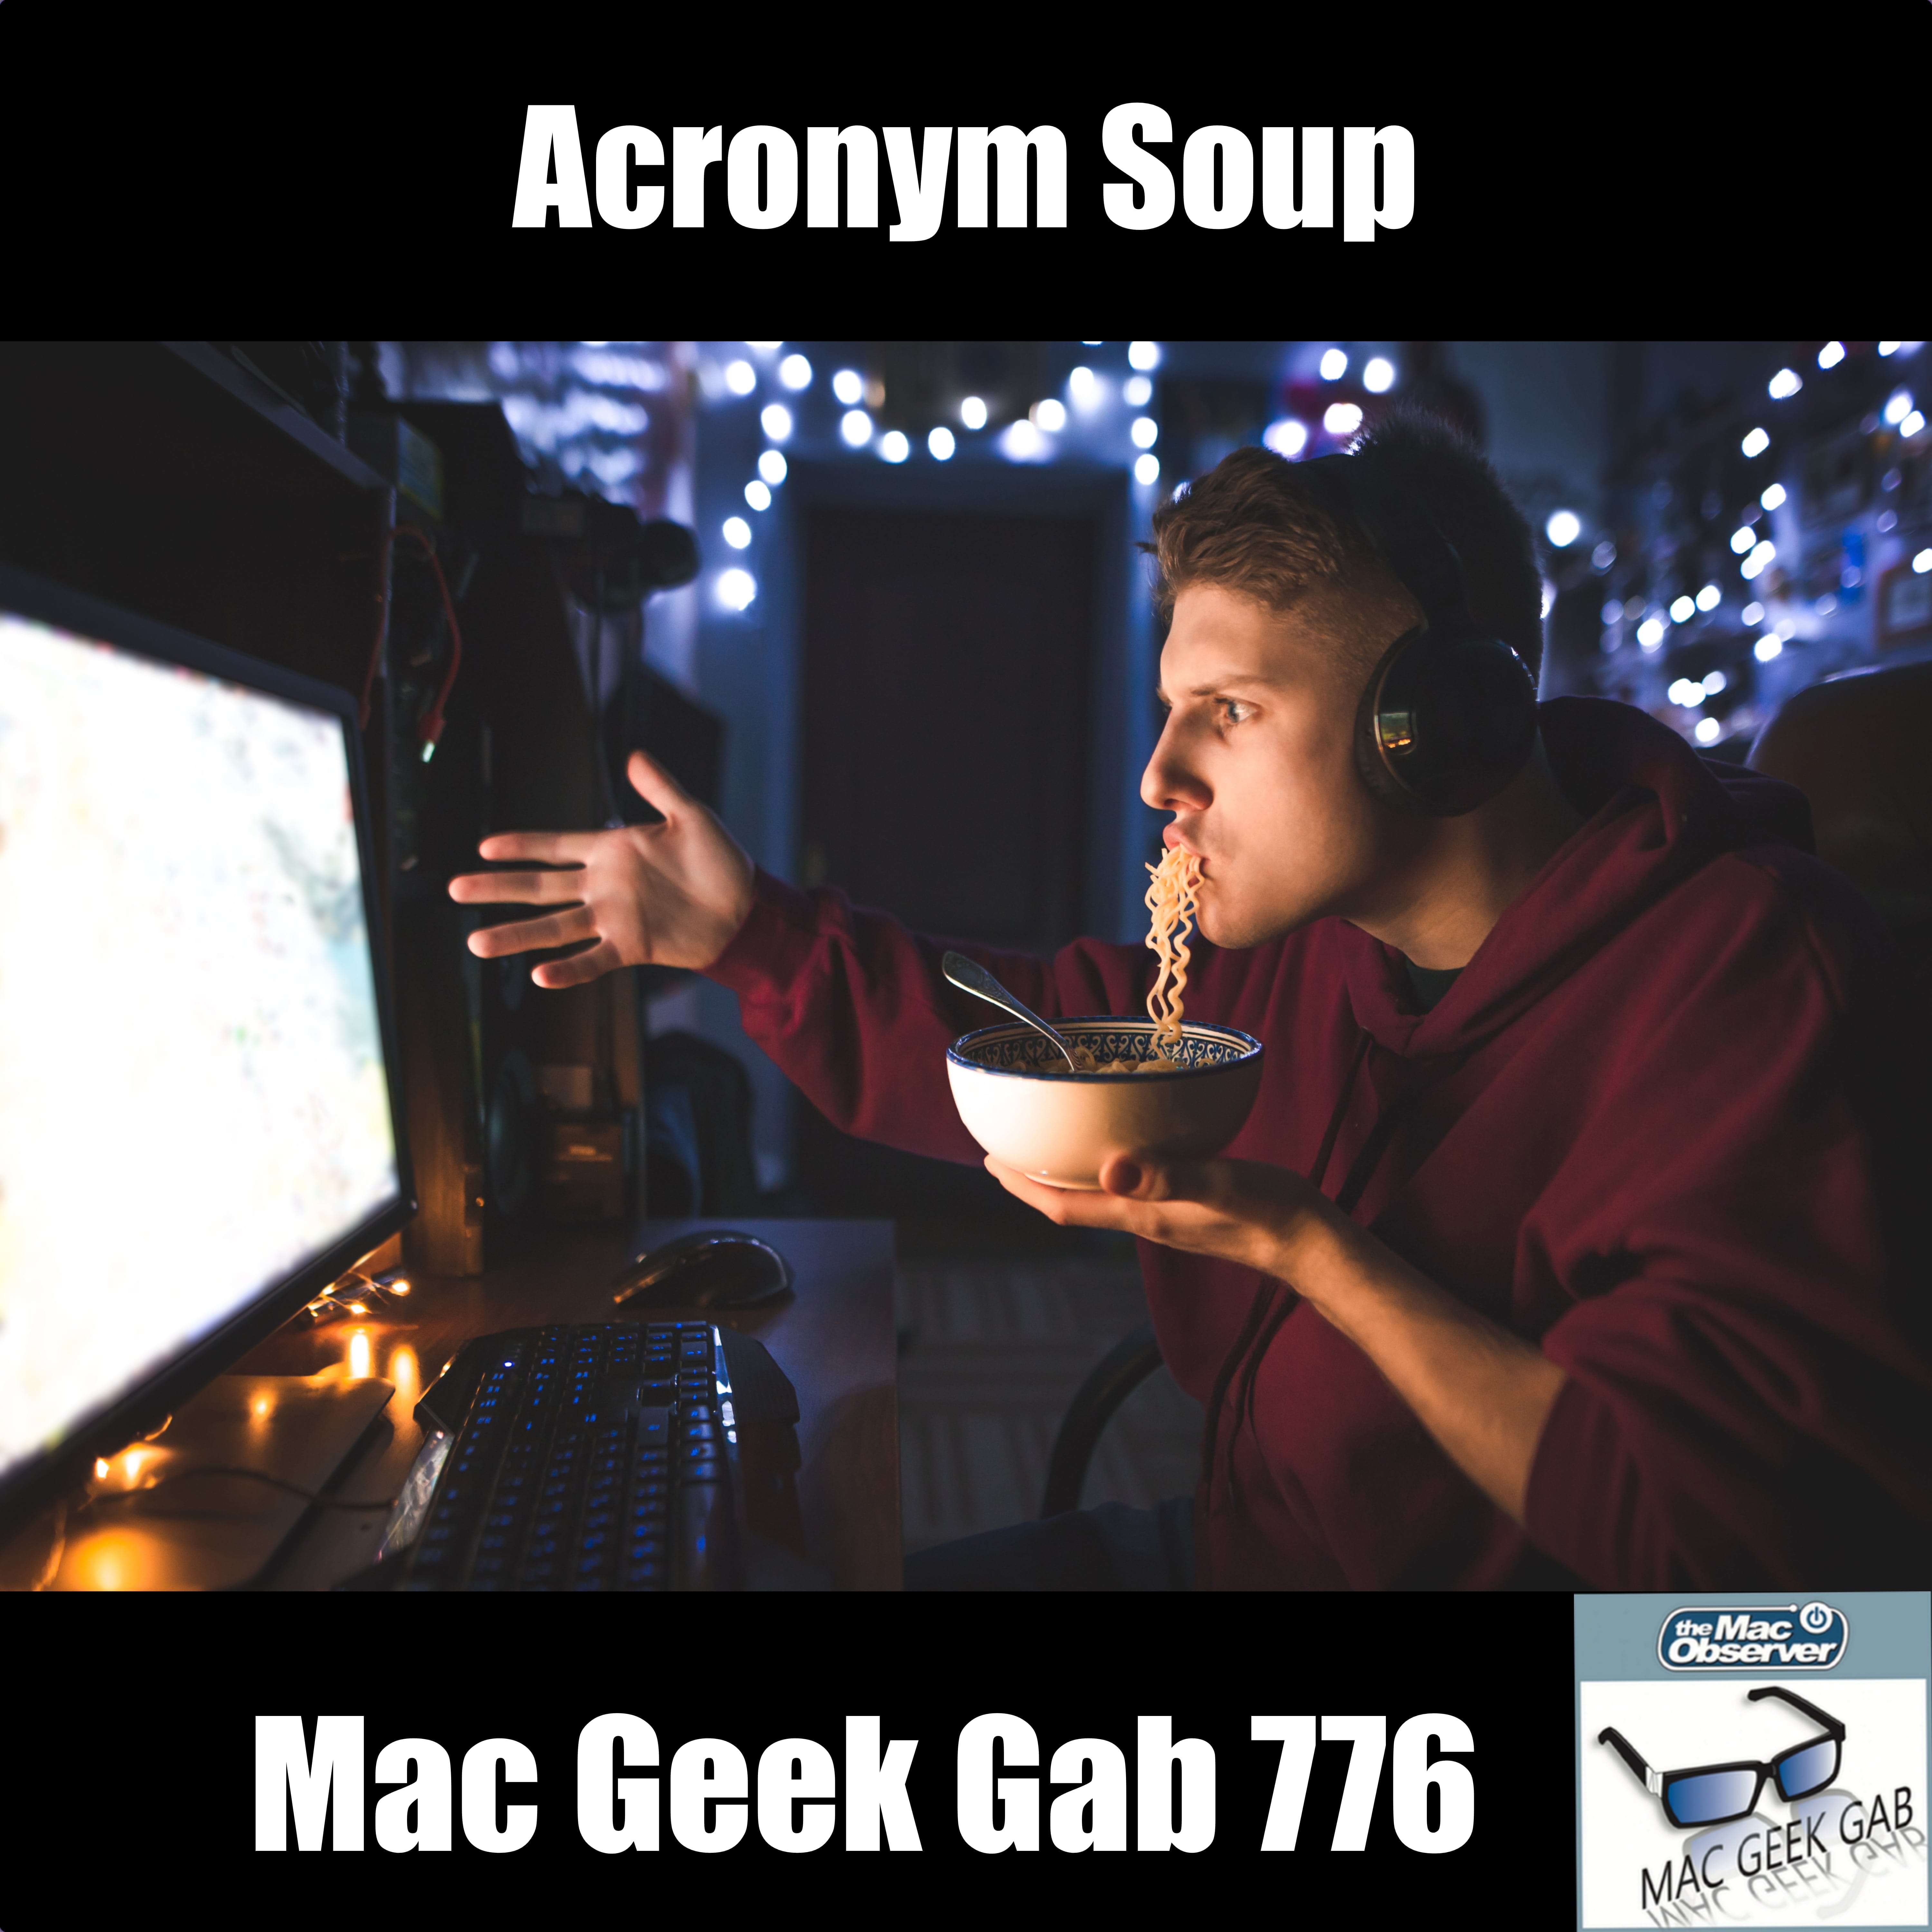 Acronym Soup – Mac Geek Gab Podcast 776